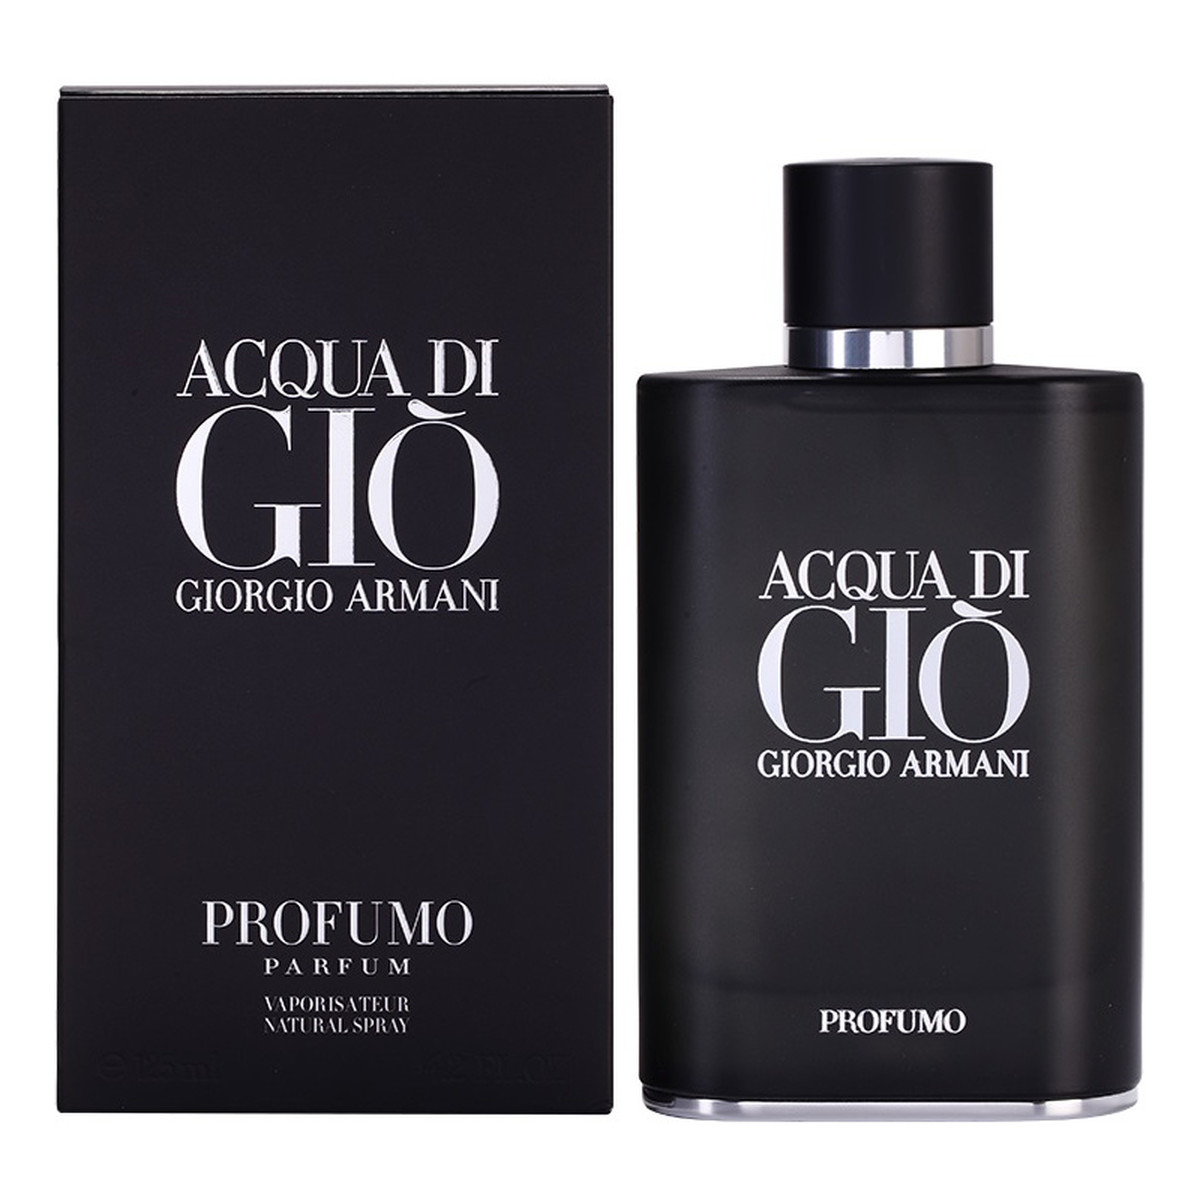 Giorgio Armani Acqua di Gio Profumo Woda perfumowana spray 75ml